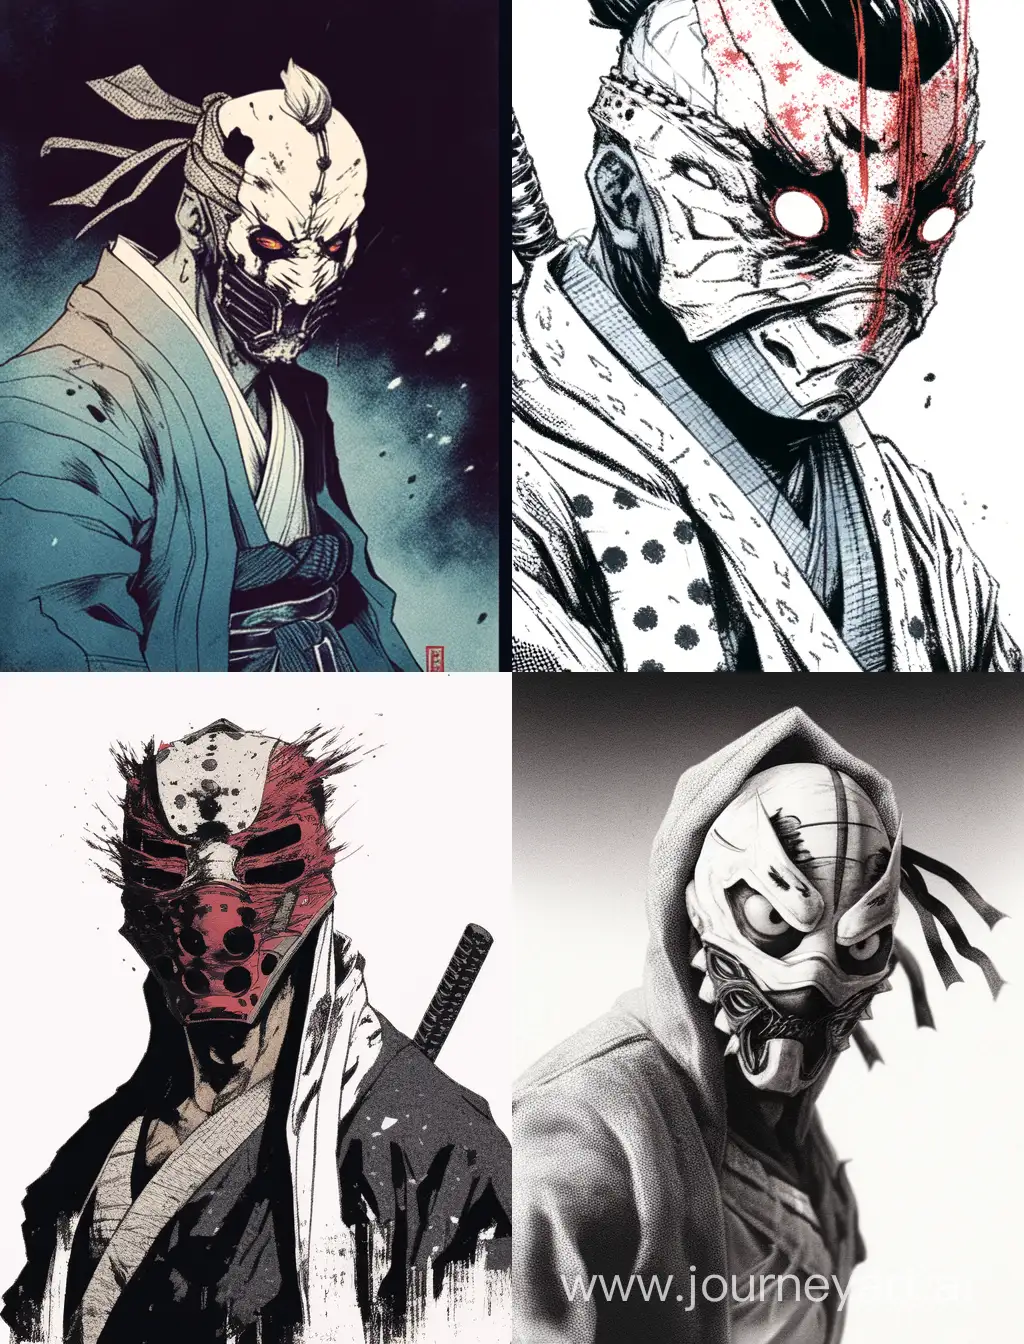 Japanese-Manga-Style-Boy-in-Scary-Mask-Yakuza-Inspired-Art